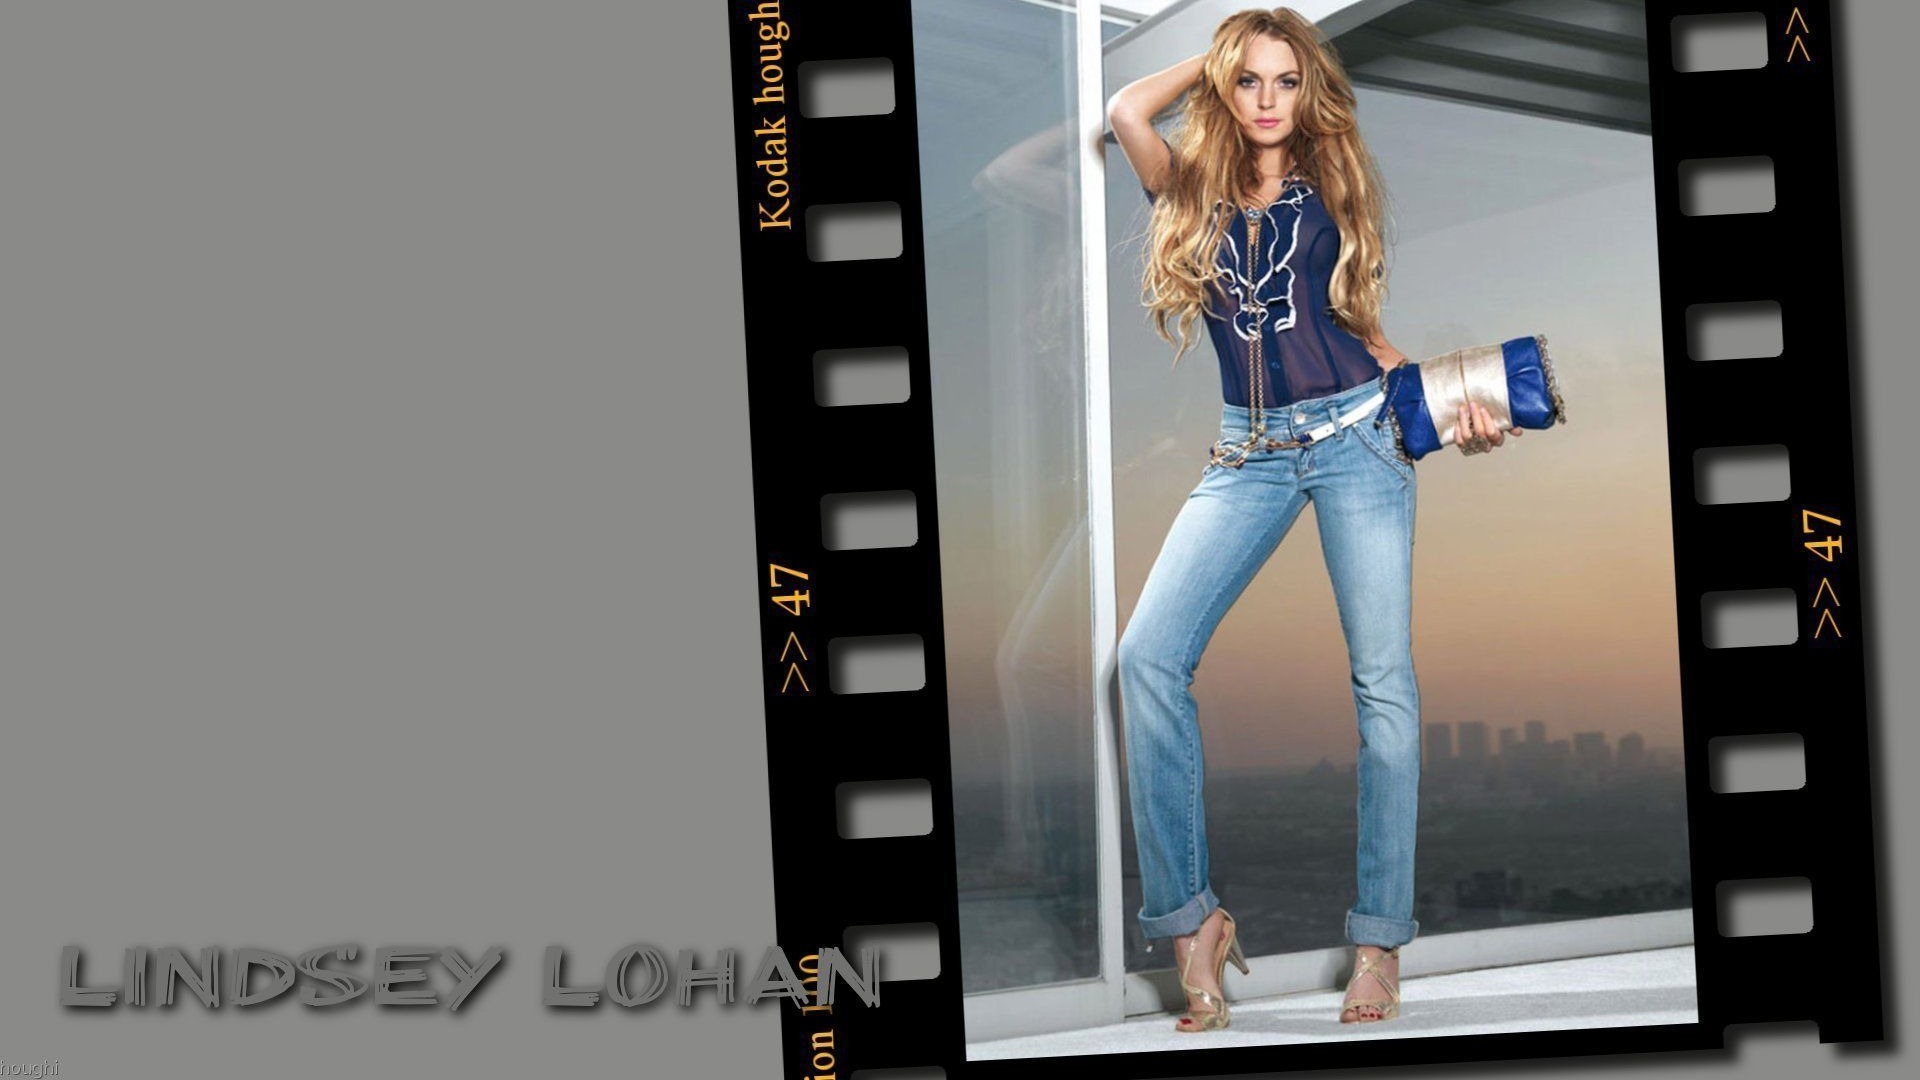 Lindsay Lohan 林赛·罗韩 美女壁纸12 - 1920x1080